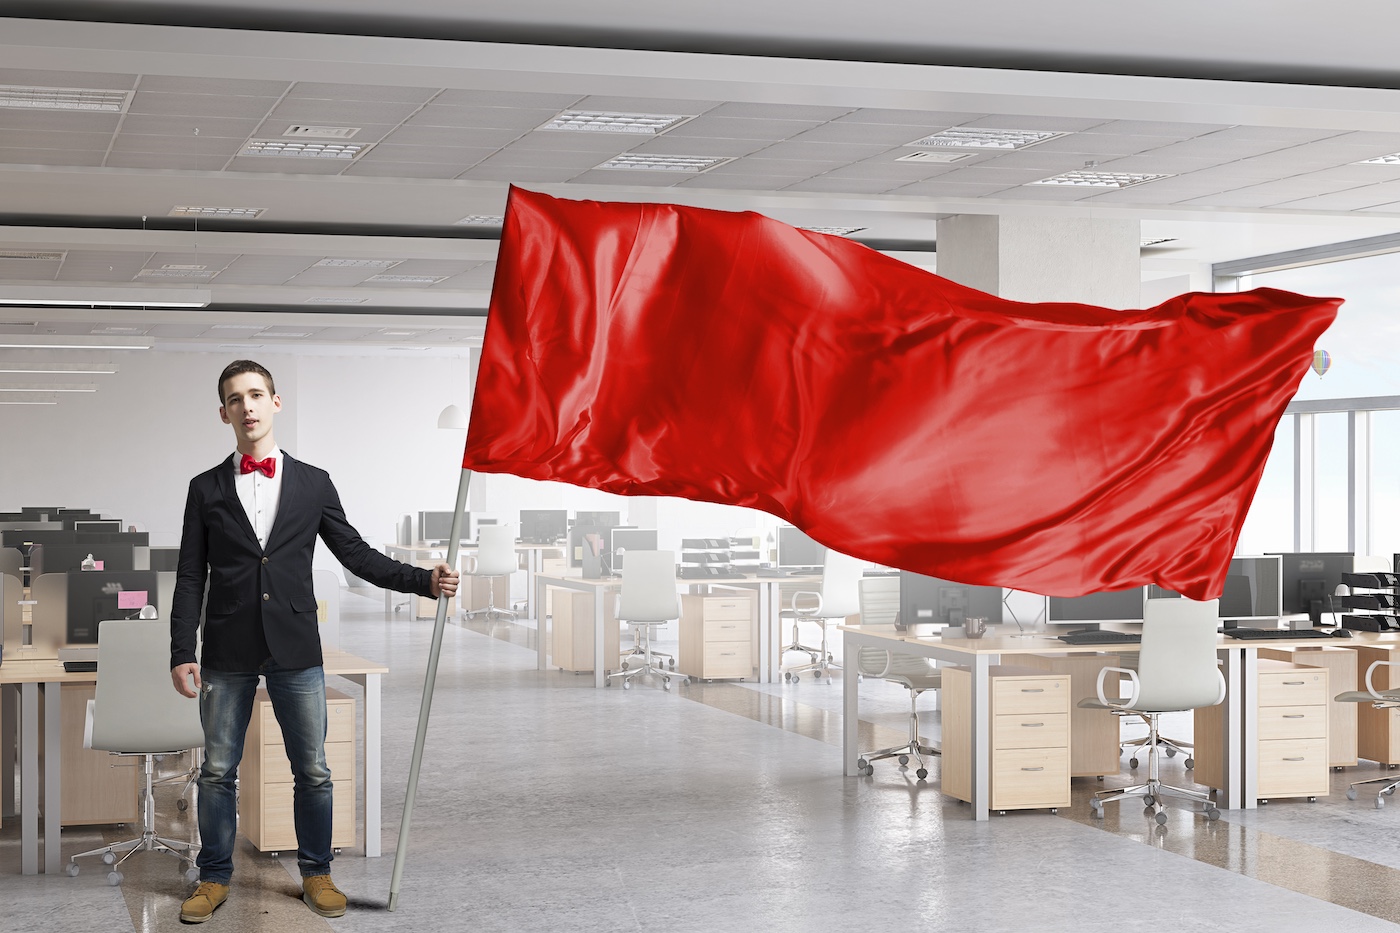 Bărbat fluturând avertisment steag roșu la o companie de tehnologie goală